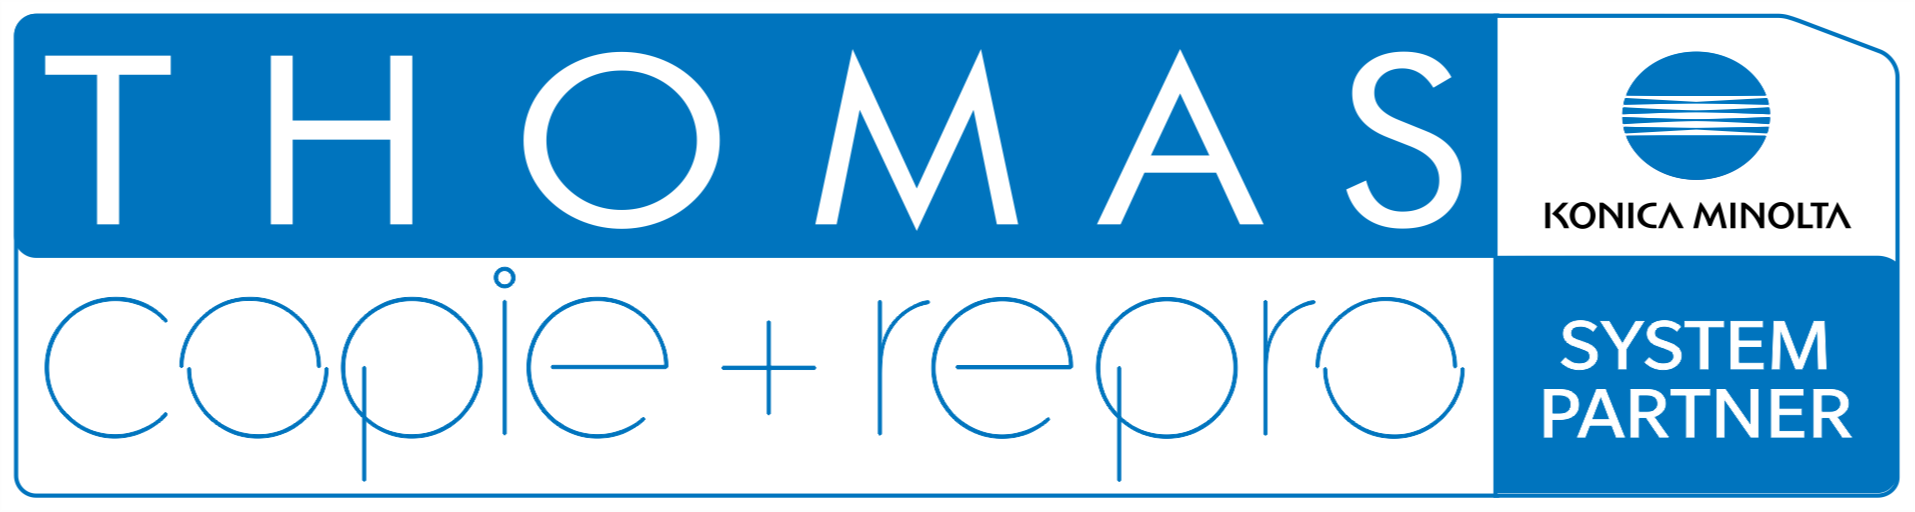 Logo der Firma THOMAS copie + repro e.K. | Copyshop | Druck-, Scan- und Kopierdienstleistungen aus Löbau